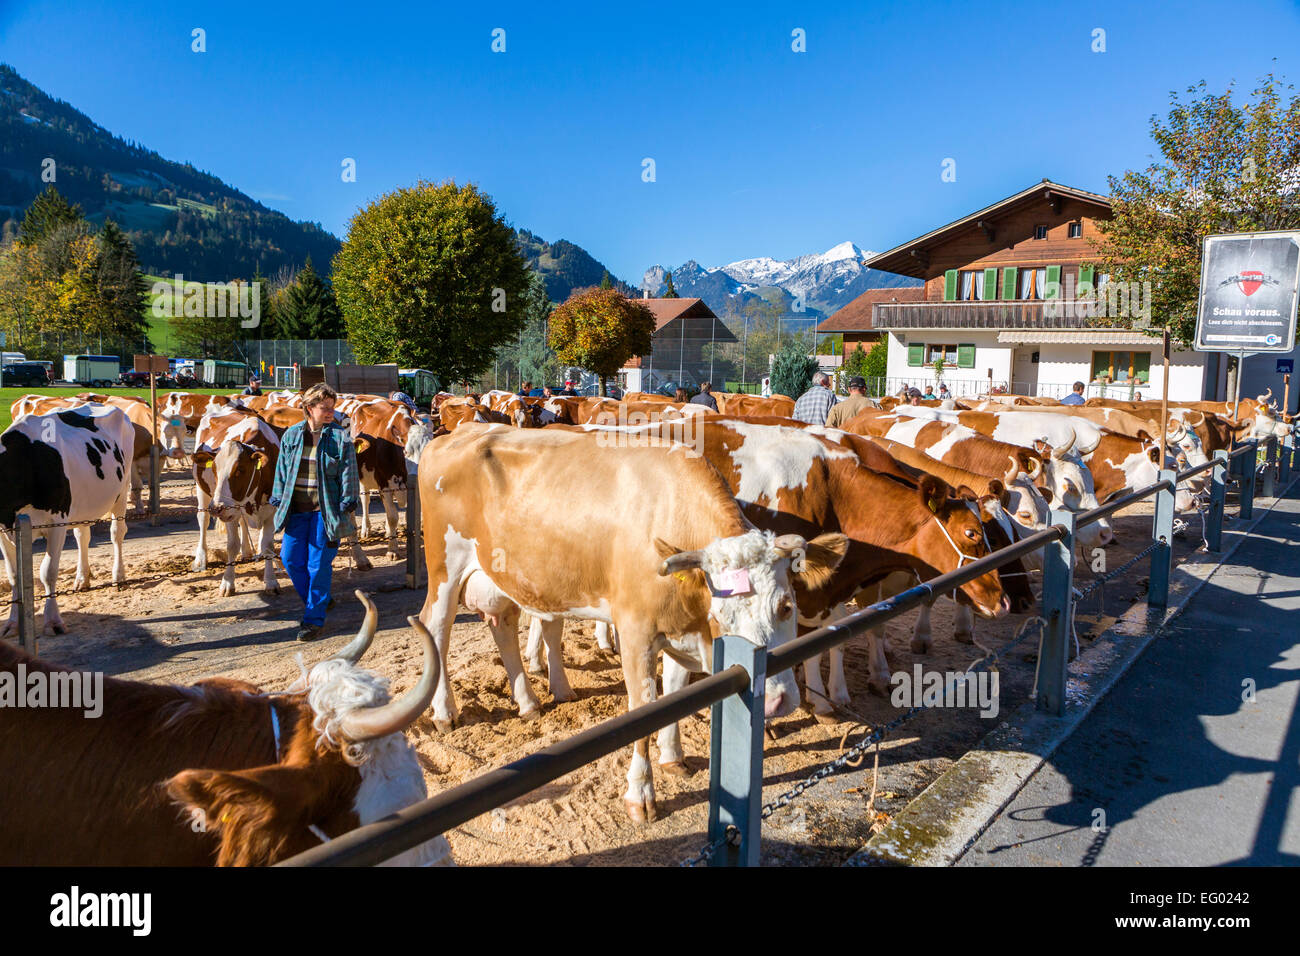 Cattle market, Därstetten, Kanton Bern, Switzerland. Stock Photo